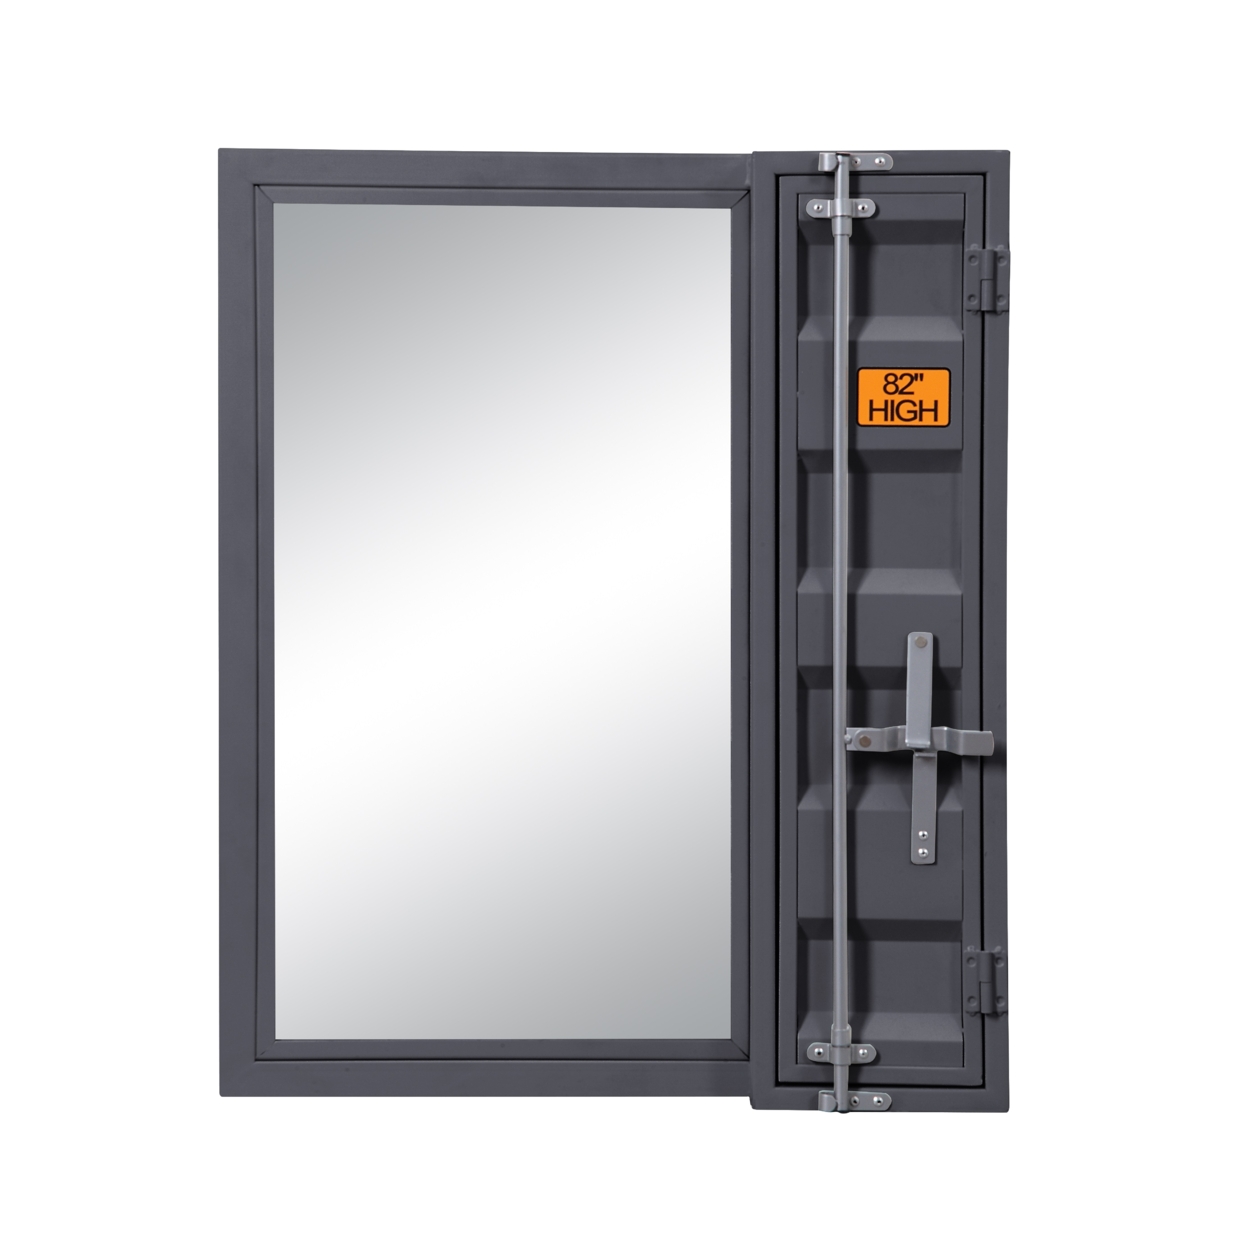 Industrial Style Metal Vanity Mirror With Recessed Door Storage, Gray- Saltoro Sherpi